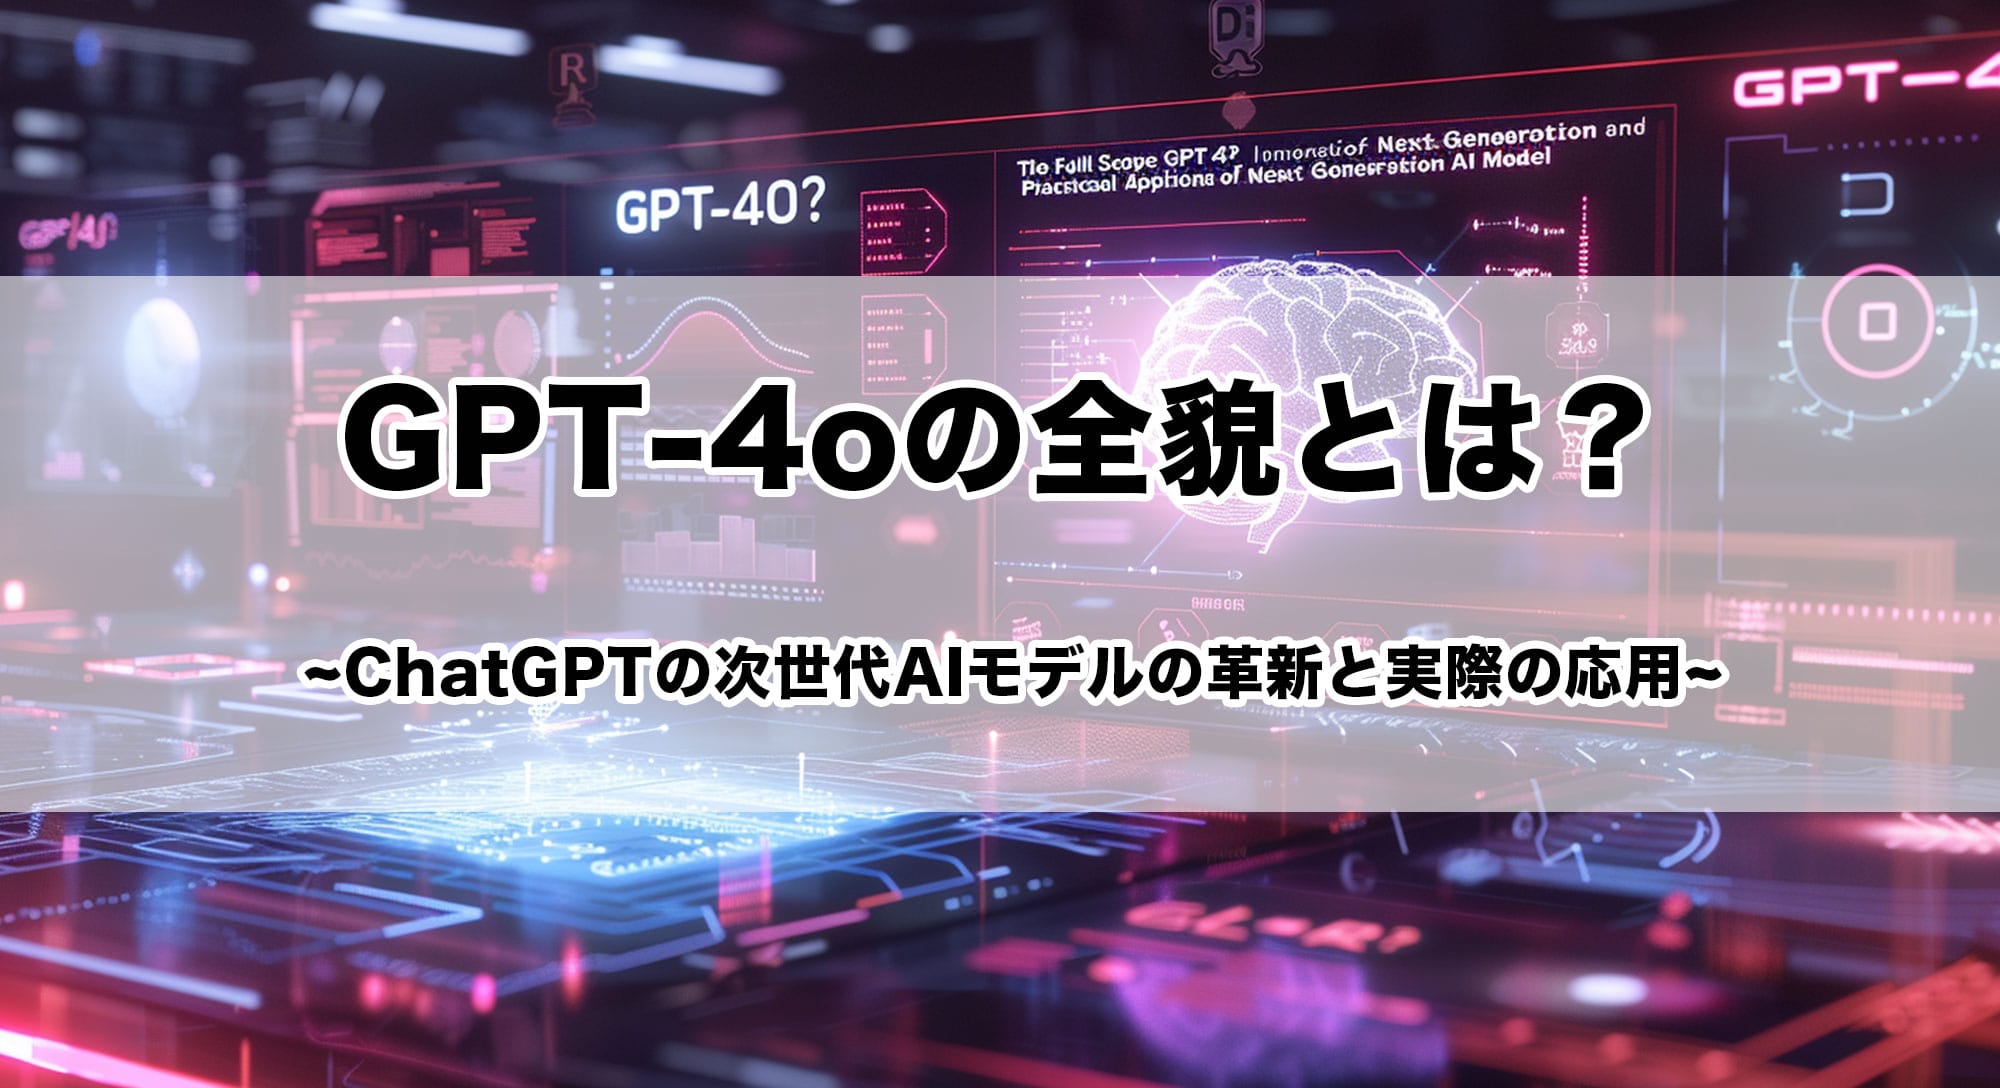 GPT-4oの全貌とは？ChatGPTの次世代AIモデルの革新と実際の応用